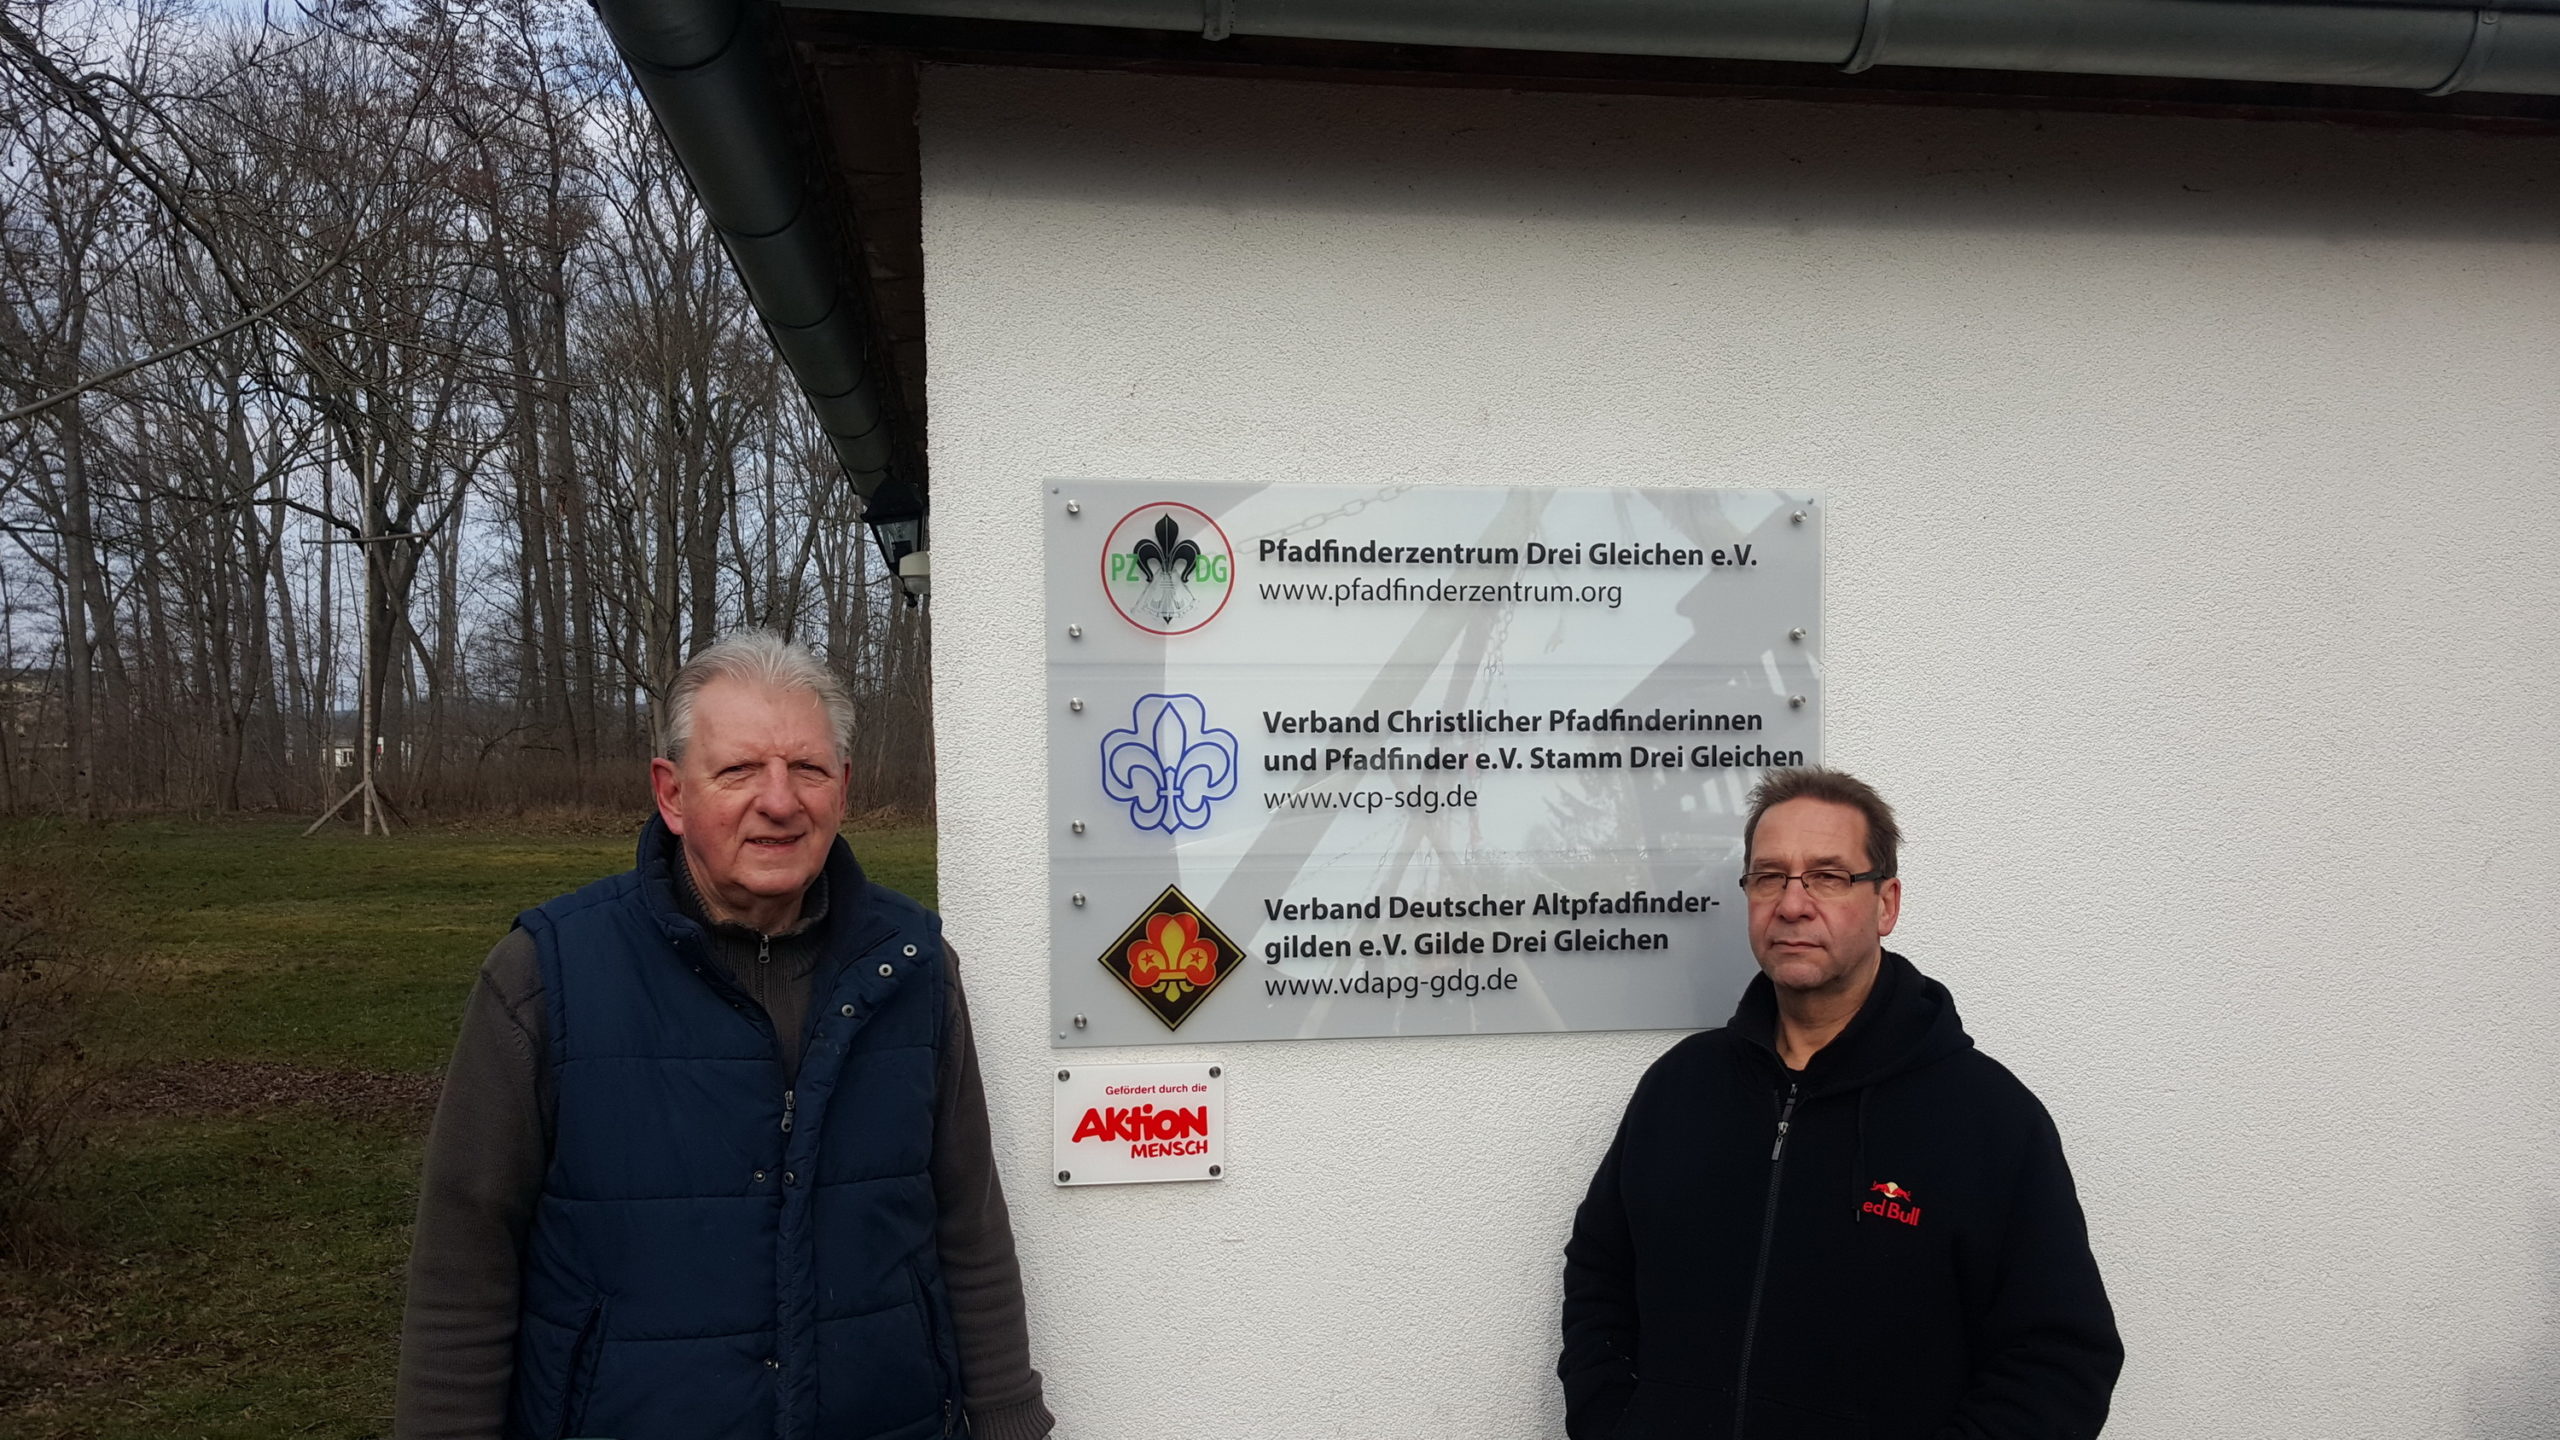 Rolf Heinze und Eberhard Knop (v.l.n.r.) mit dem neuen Schild der Nesse-Apfelstädter Pfadfinderinnen und Pfadfinder